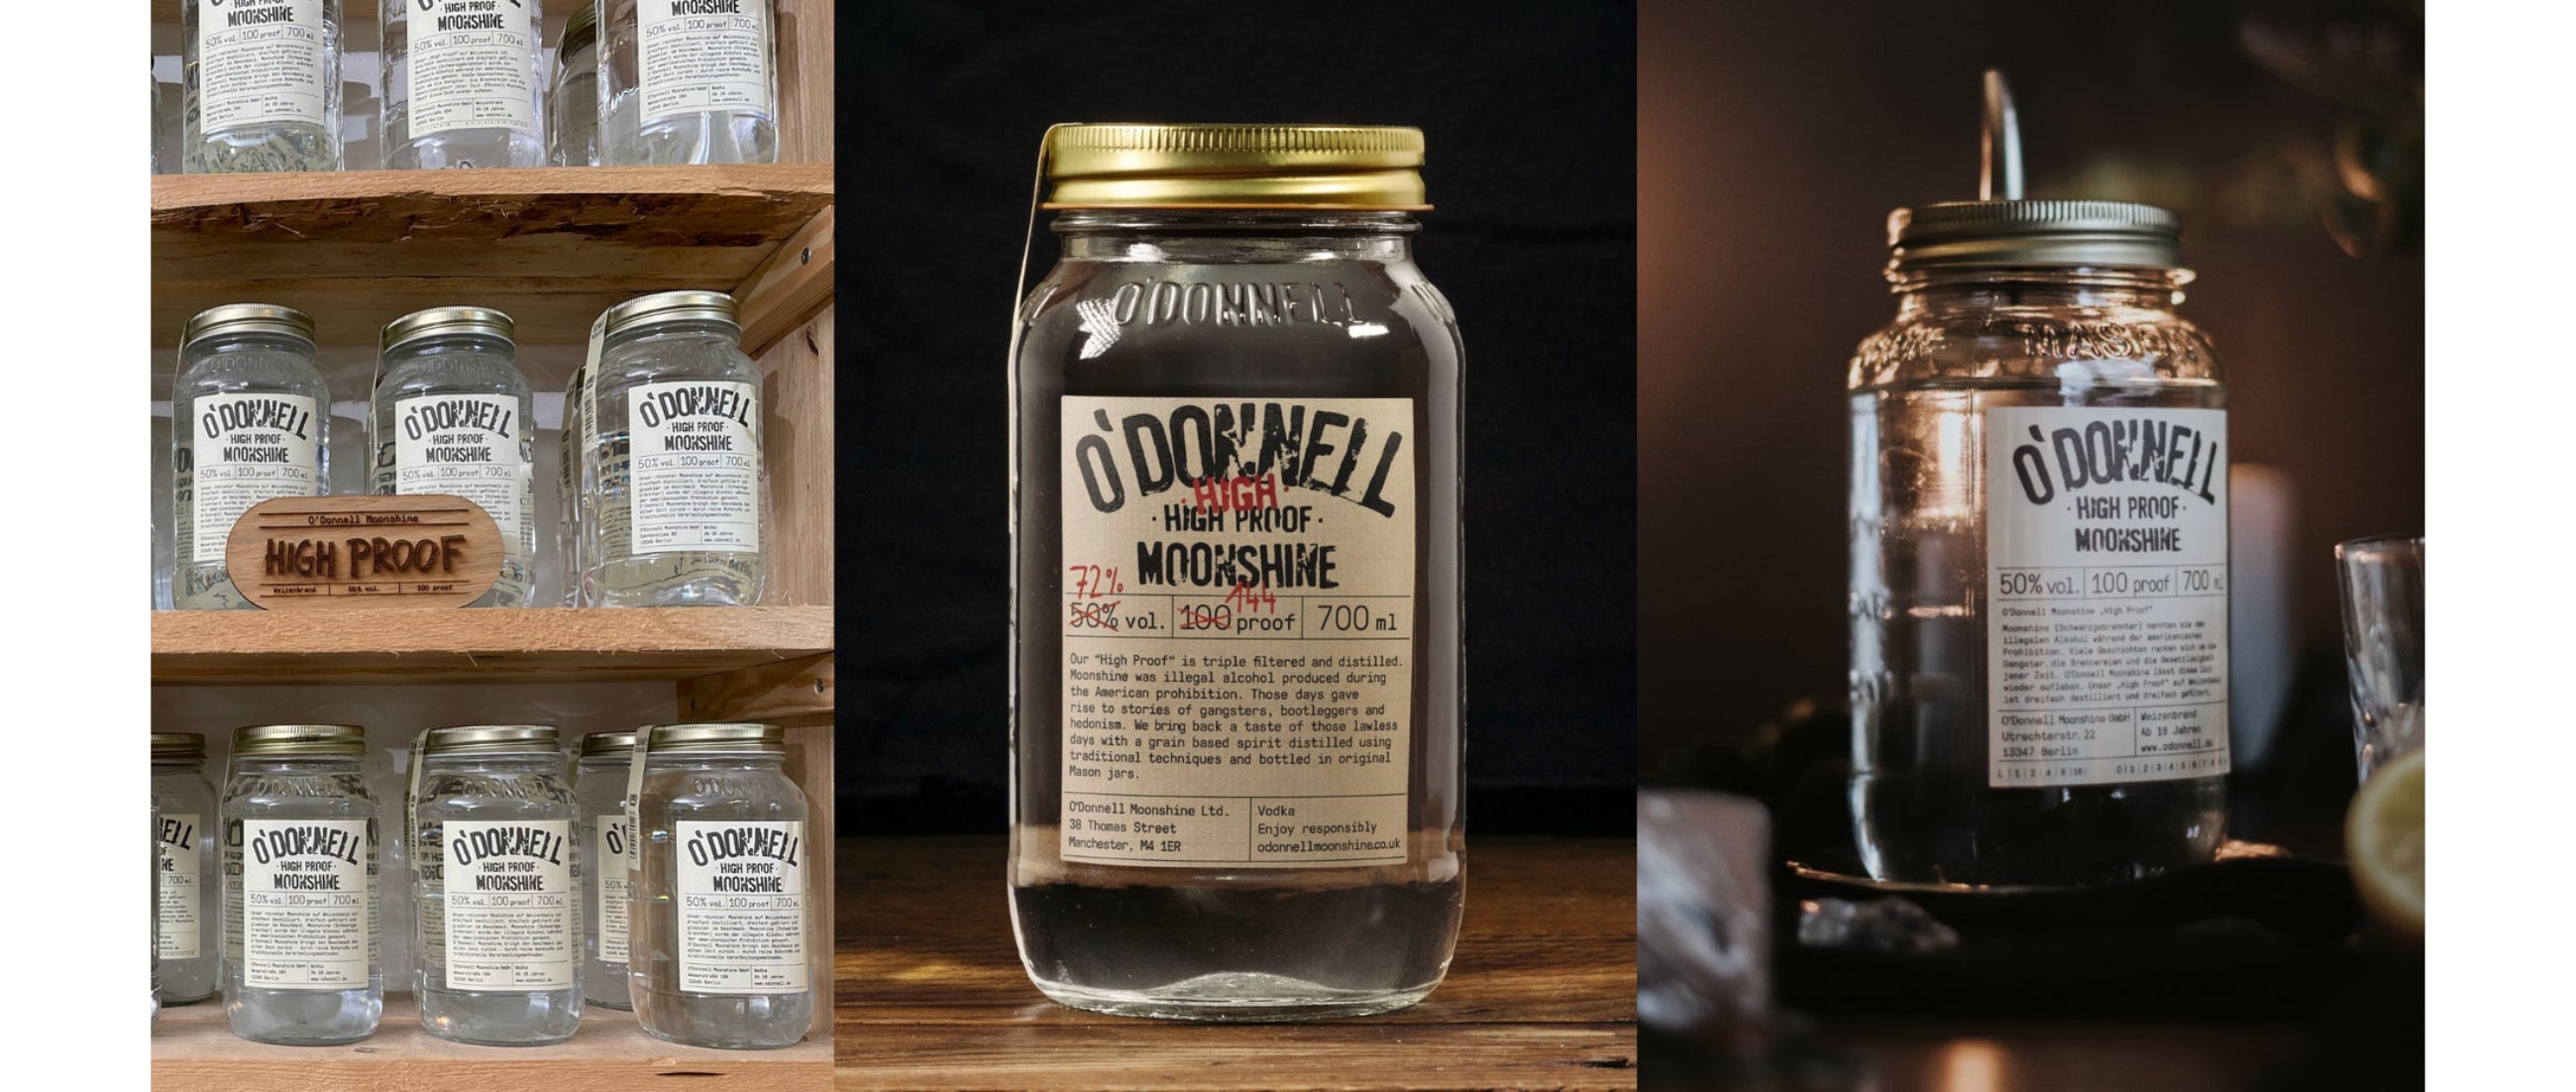 Die “High Proof” und “High High Proof” Vodka von O'Donnell Moonshine: Ein Duell der Intensität